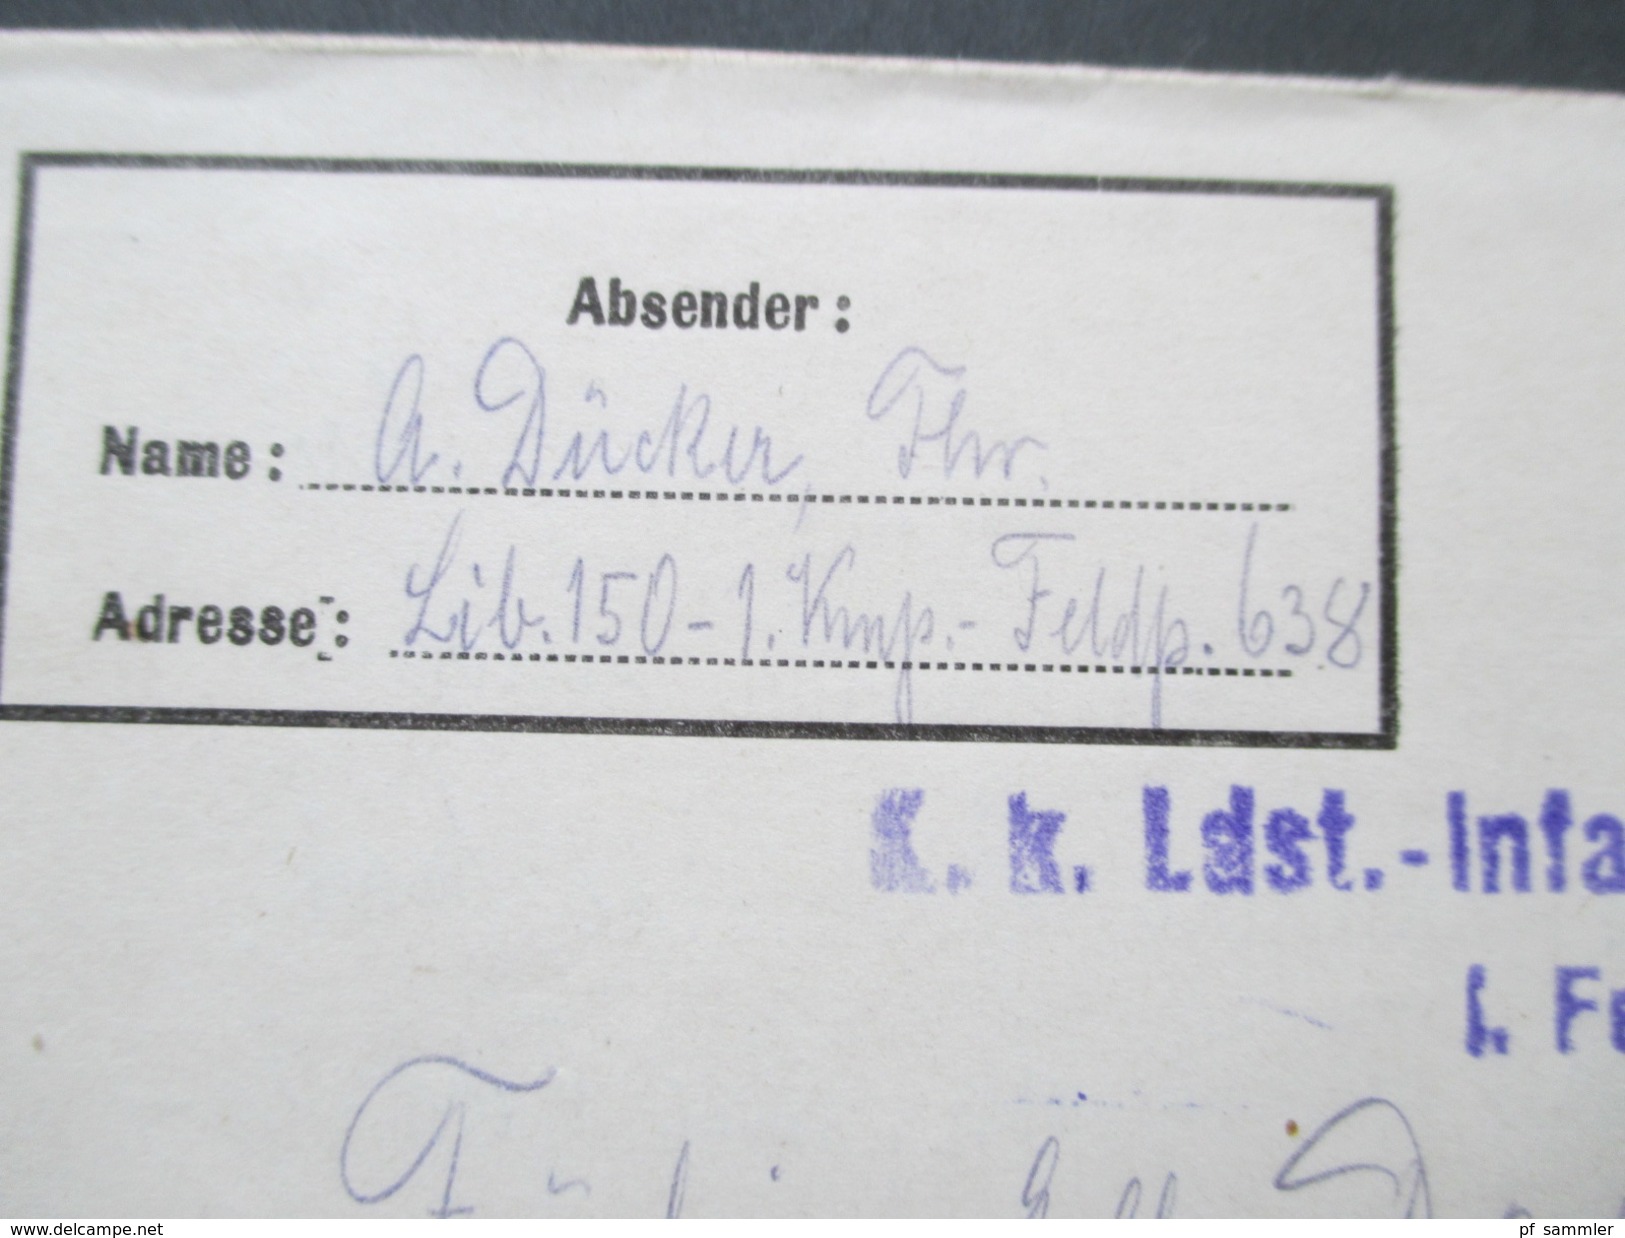 Österreich 1917 Feldpostbrief Mit Inhalt! K.K. Ldst. Infanterie Bataillon Nr. 150. I. Fekldkompagnie. FP Station 638 - Covers & Documents